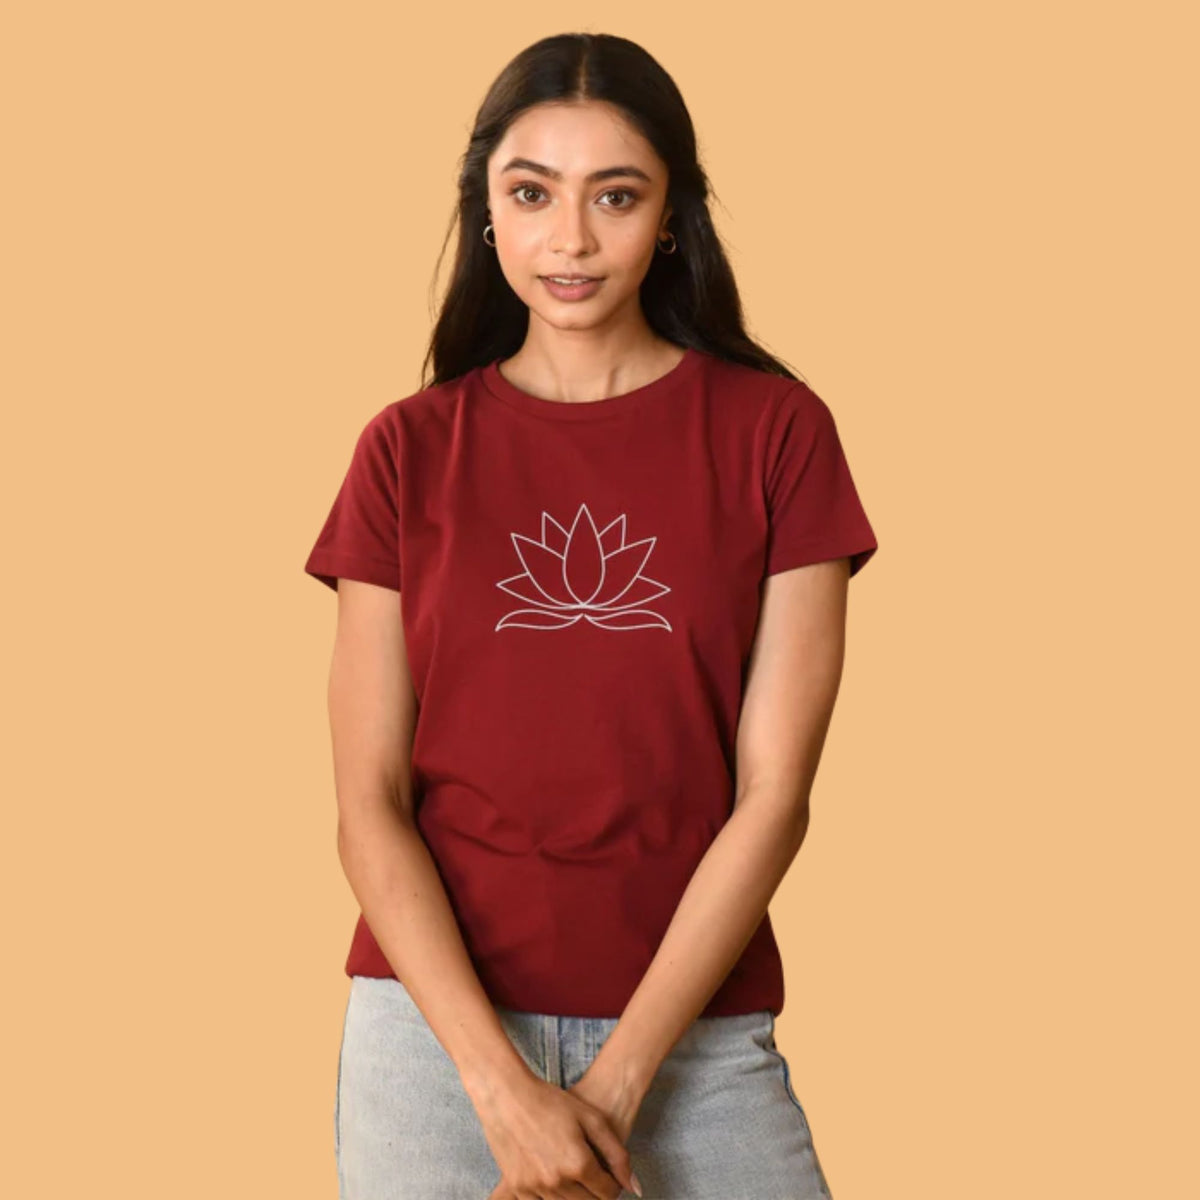 Do more yoga | T-shirt for girl